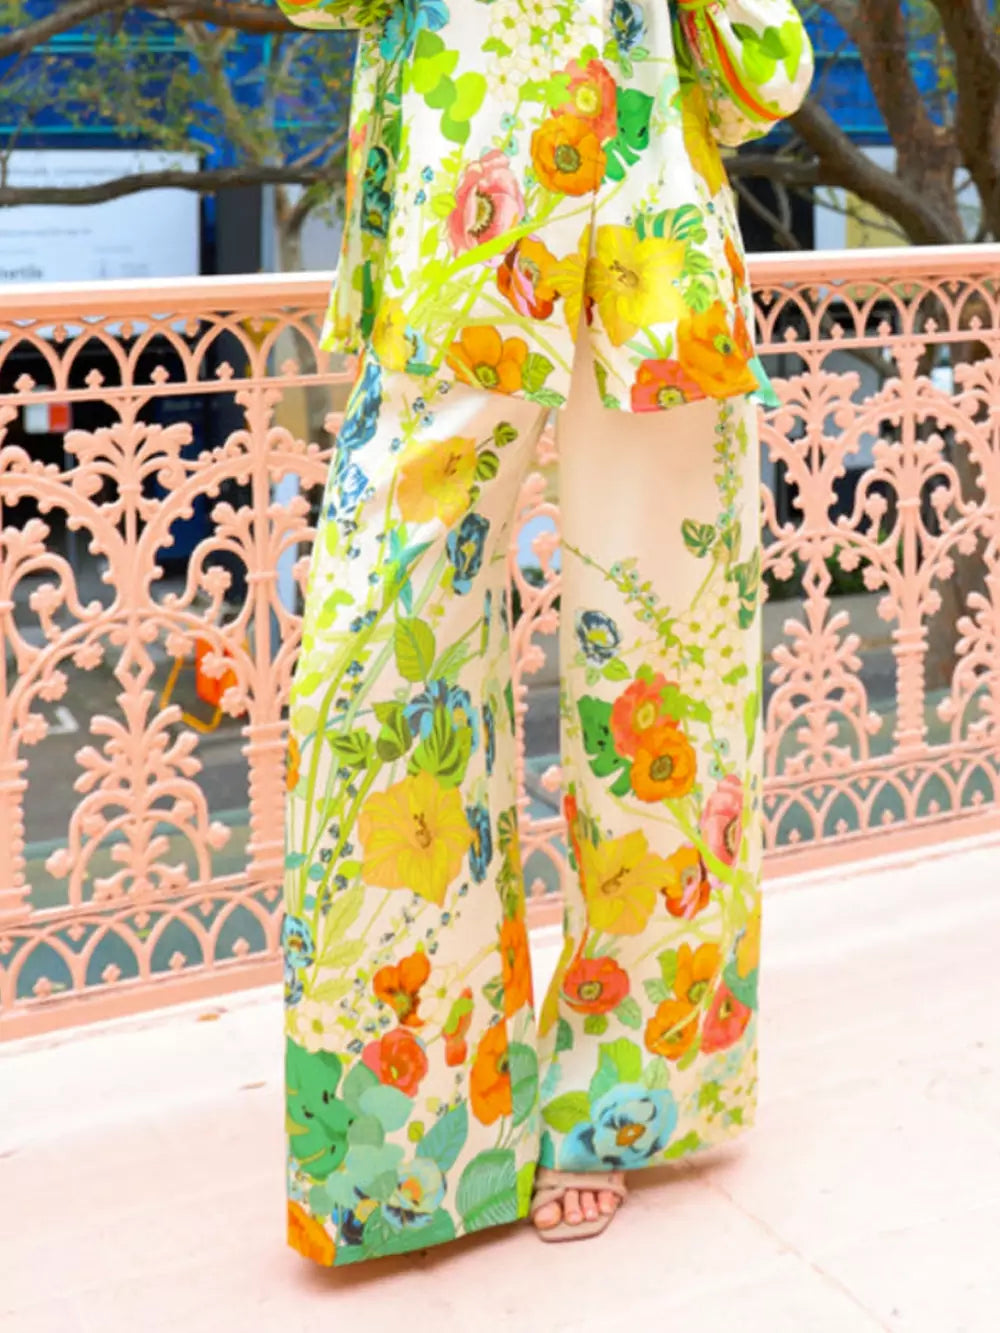 Κοστούμι παντελονιού με λουλουδάτο στάμπα ραμμένο με σιλουέτα